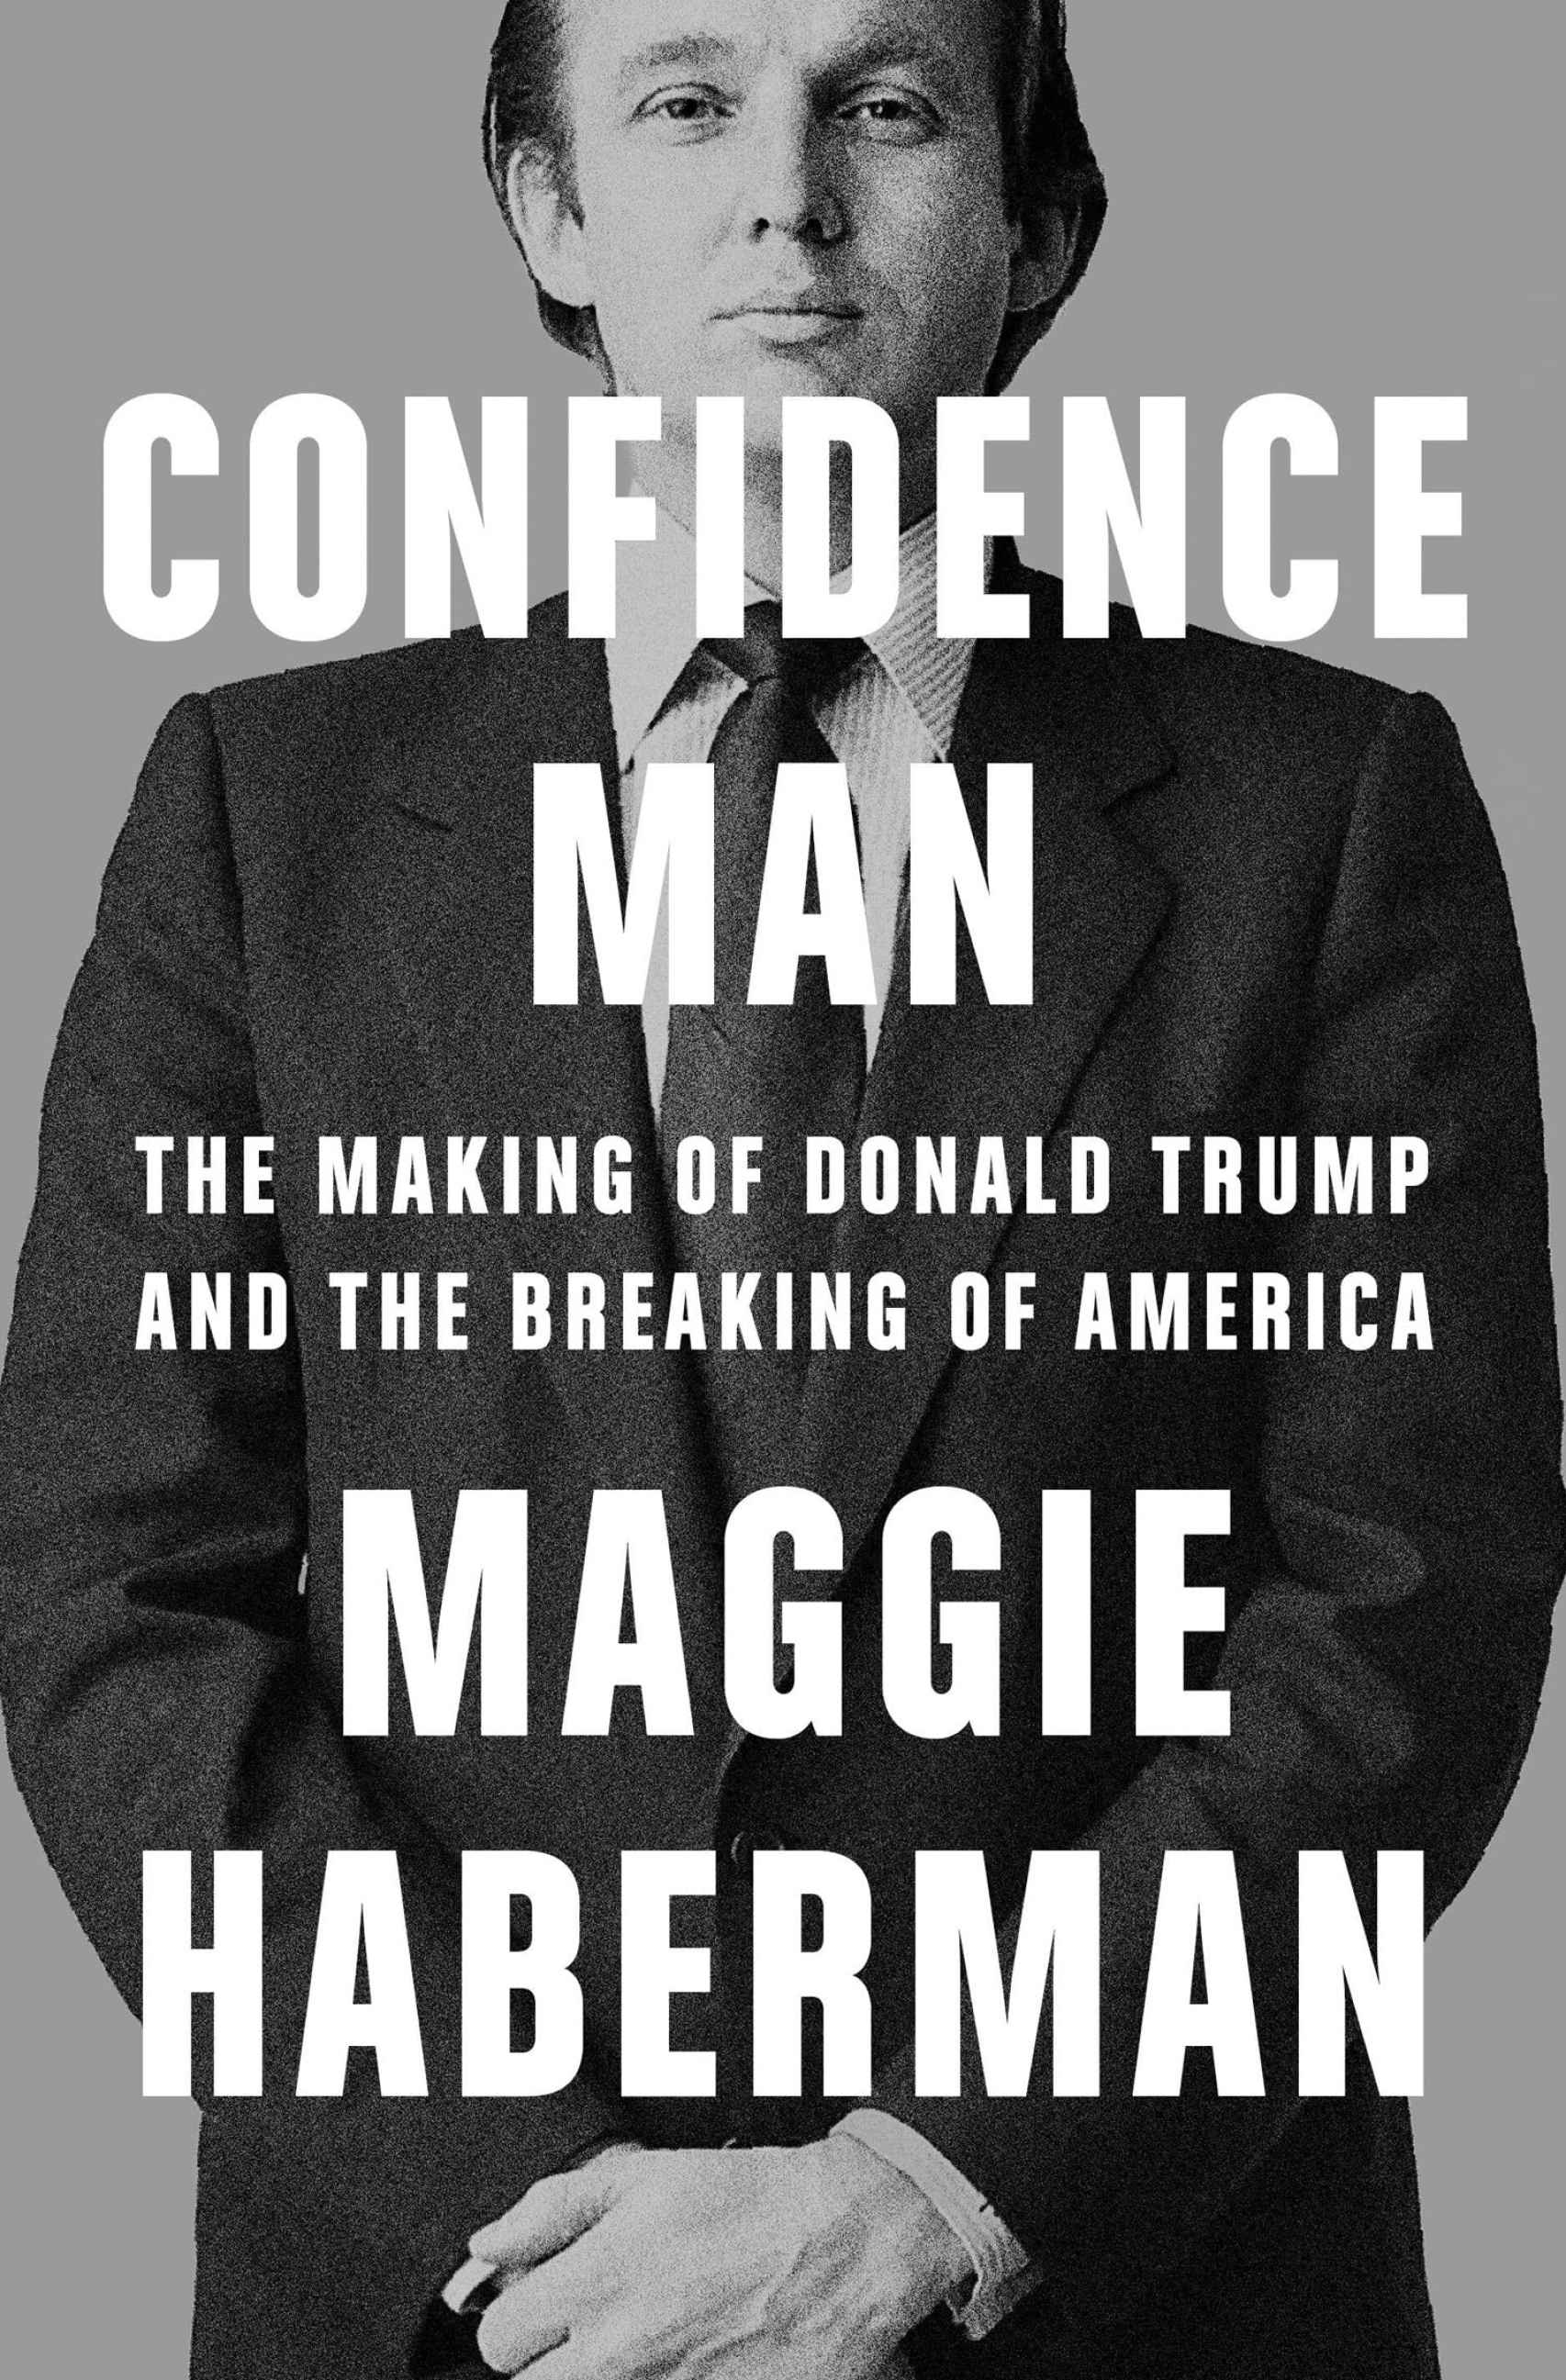 Couverture du livre de Maggie Haberman sur Trump.